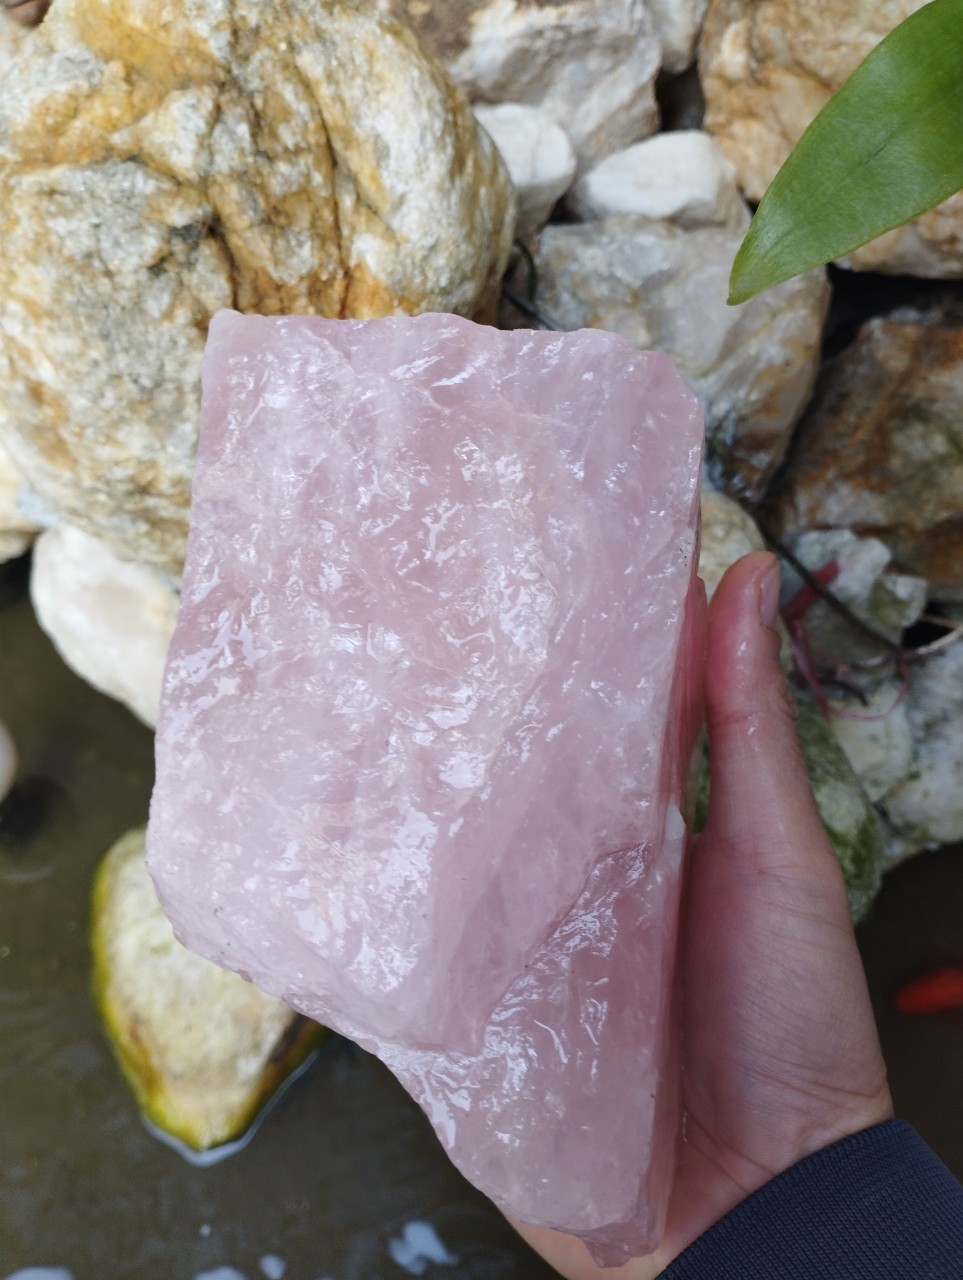 đá thạch anh vụn hồng tự nhiên năng lương - kích thước 4x6 cm 1